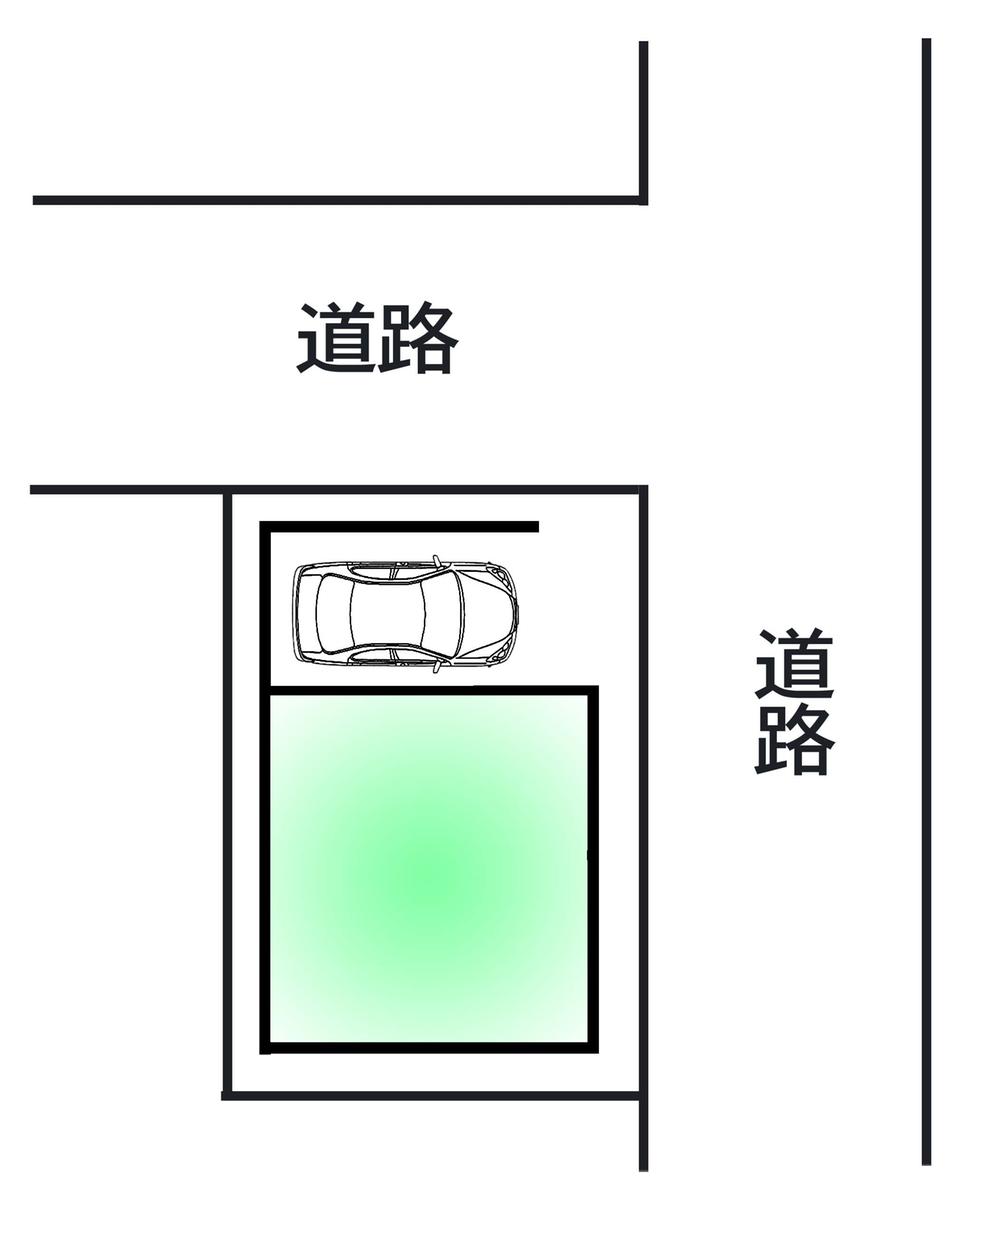 Compartment figure. 15.5 million yen, 2DK, Land area 46.47 sq m , Building area 59.45 sq m